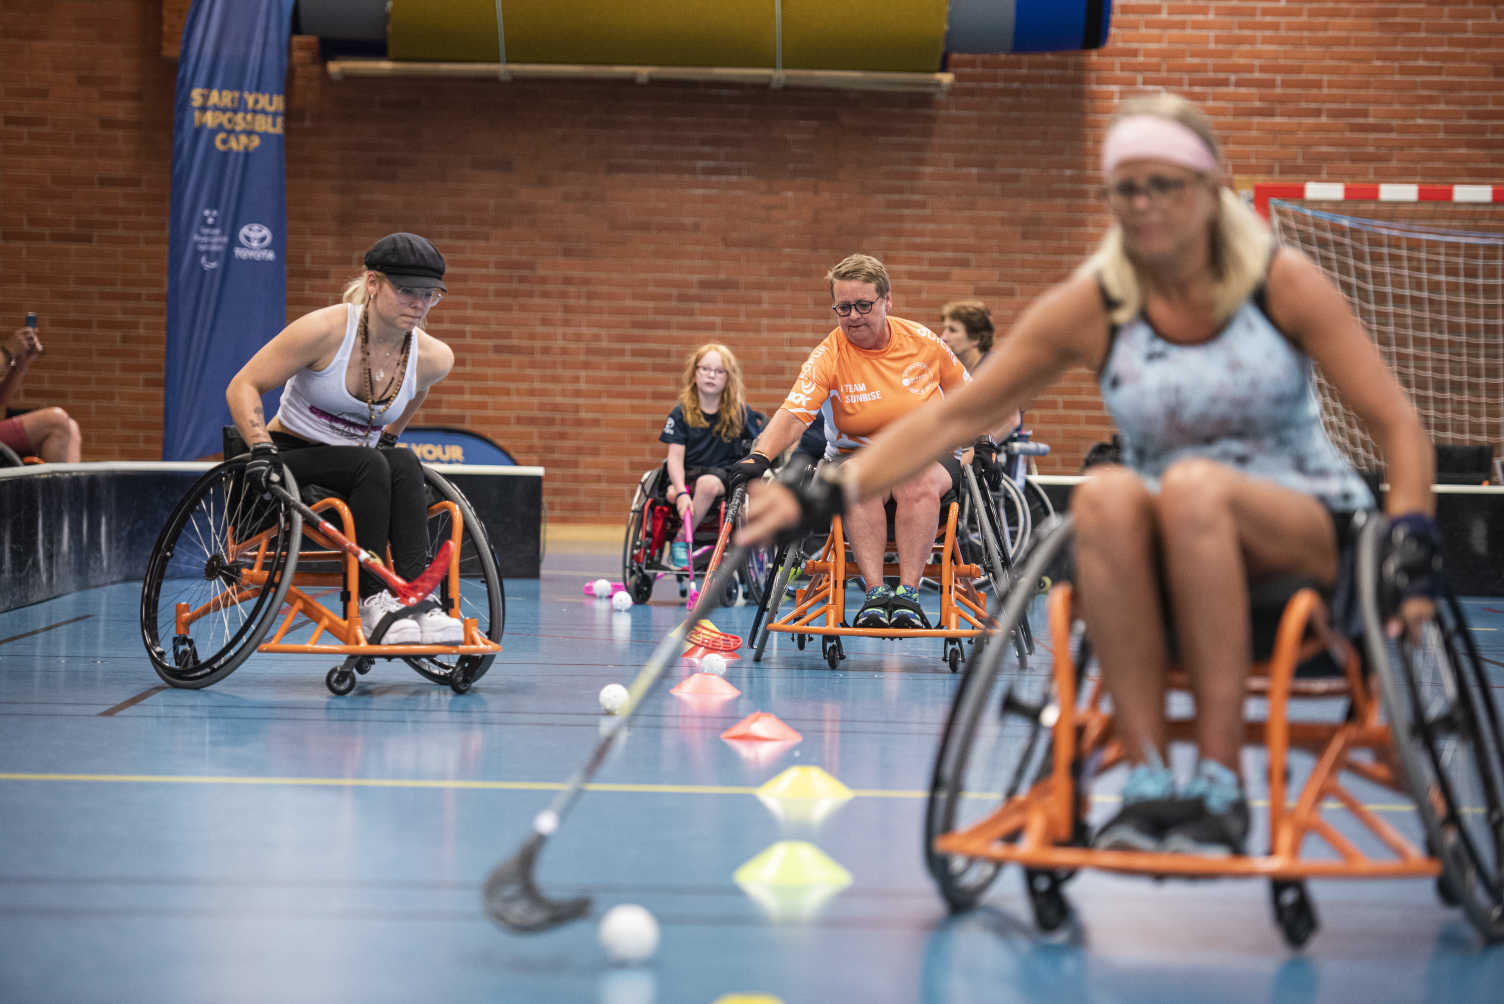 Tjejer i olika åldrar tränar rullstolsinnebandy mellan koner i idrottshall.